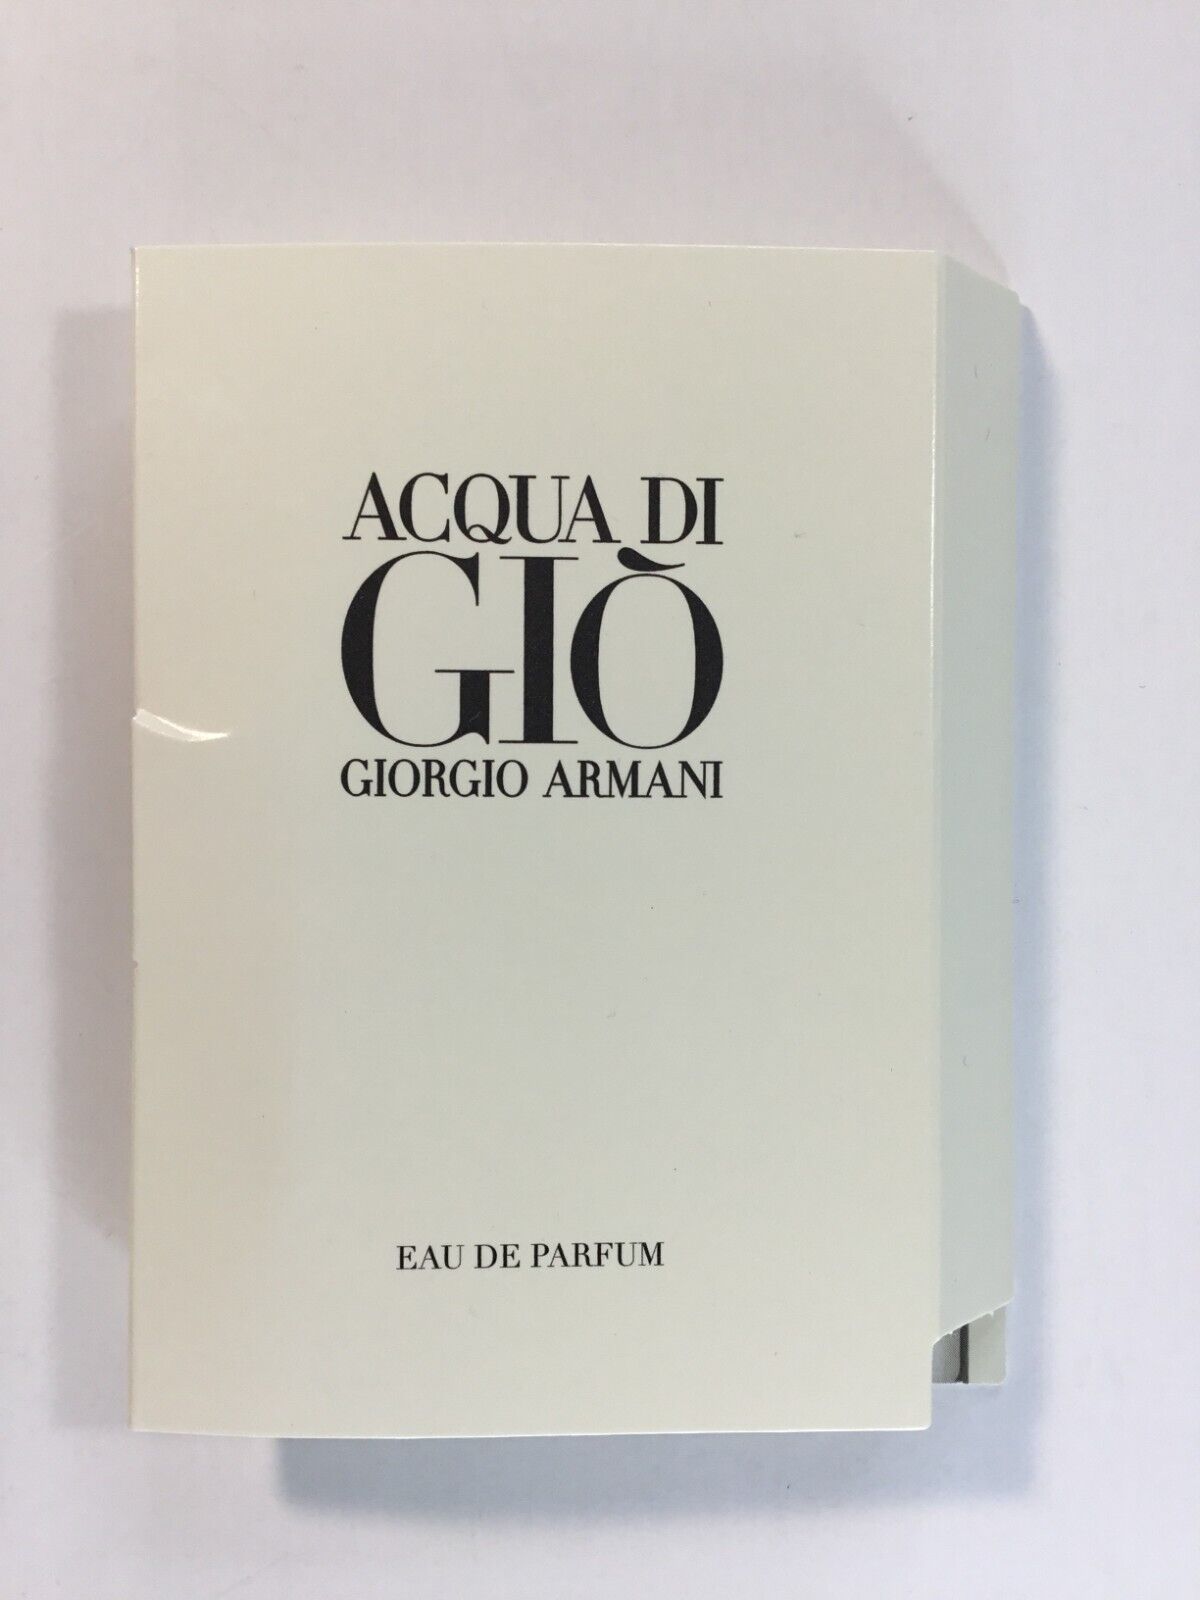 Giorgio Armani Acqua di Gio Eau de Parfum (M)